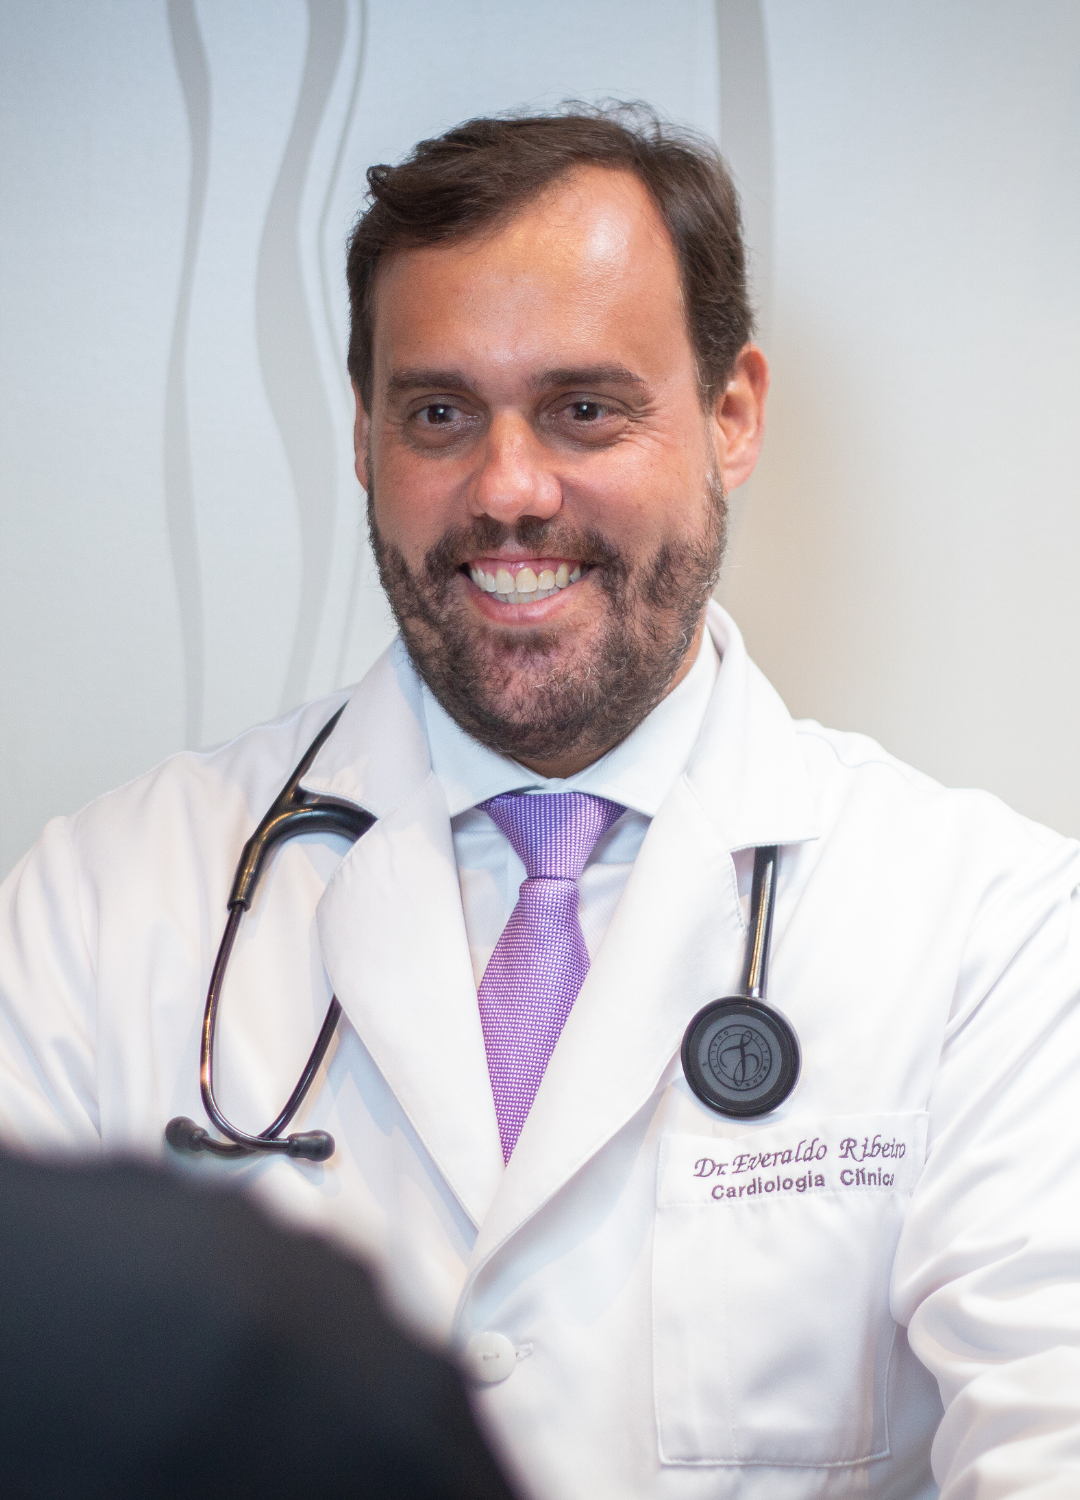 Dr. Everaldo Ribeiro